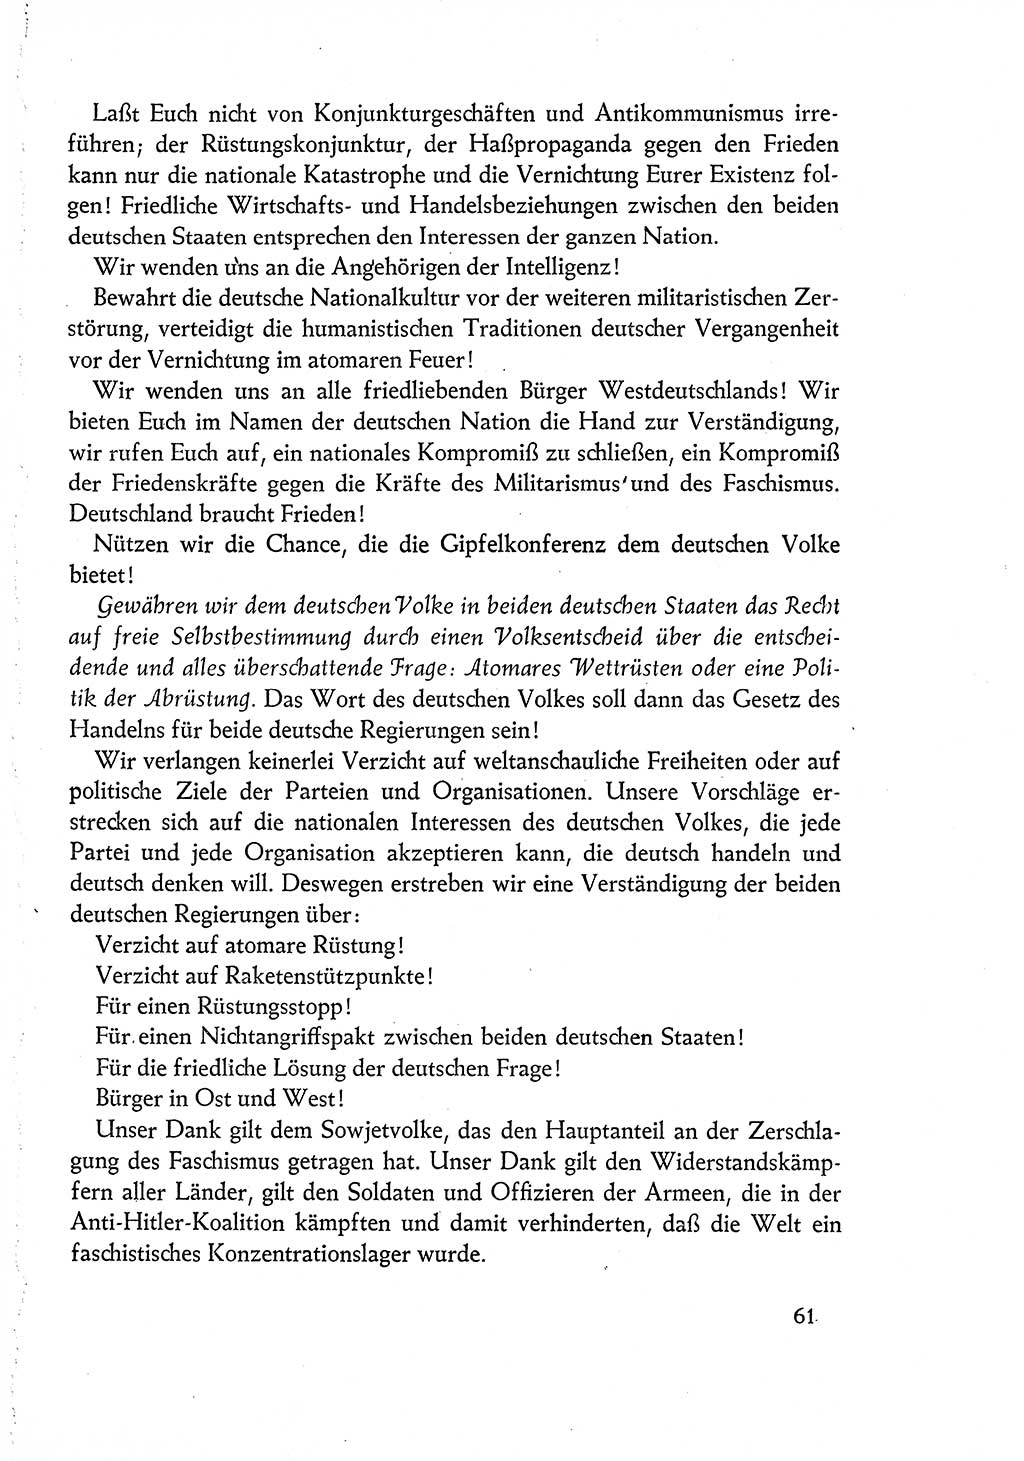 Dokumente der Sozialistischen Einheitspartei Deutschlands (SED) [Deutsche Demokratische Republik (DDR)] 1960-1961, Seite 61 (Dok. SED DDR 1960-1961, S. 61)